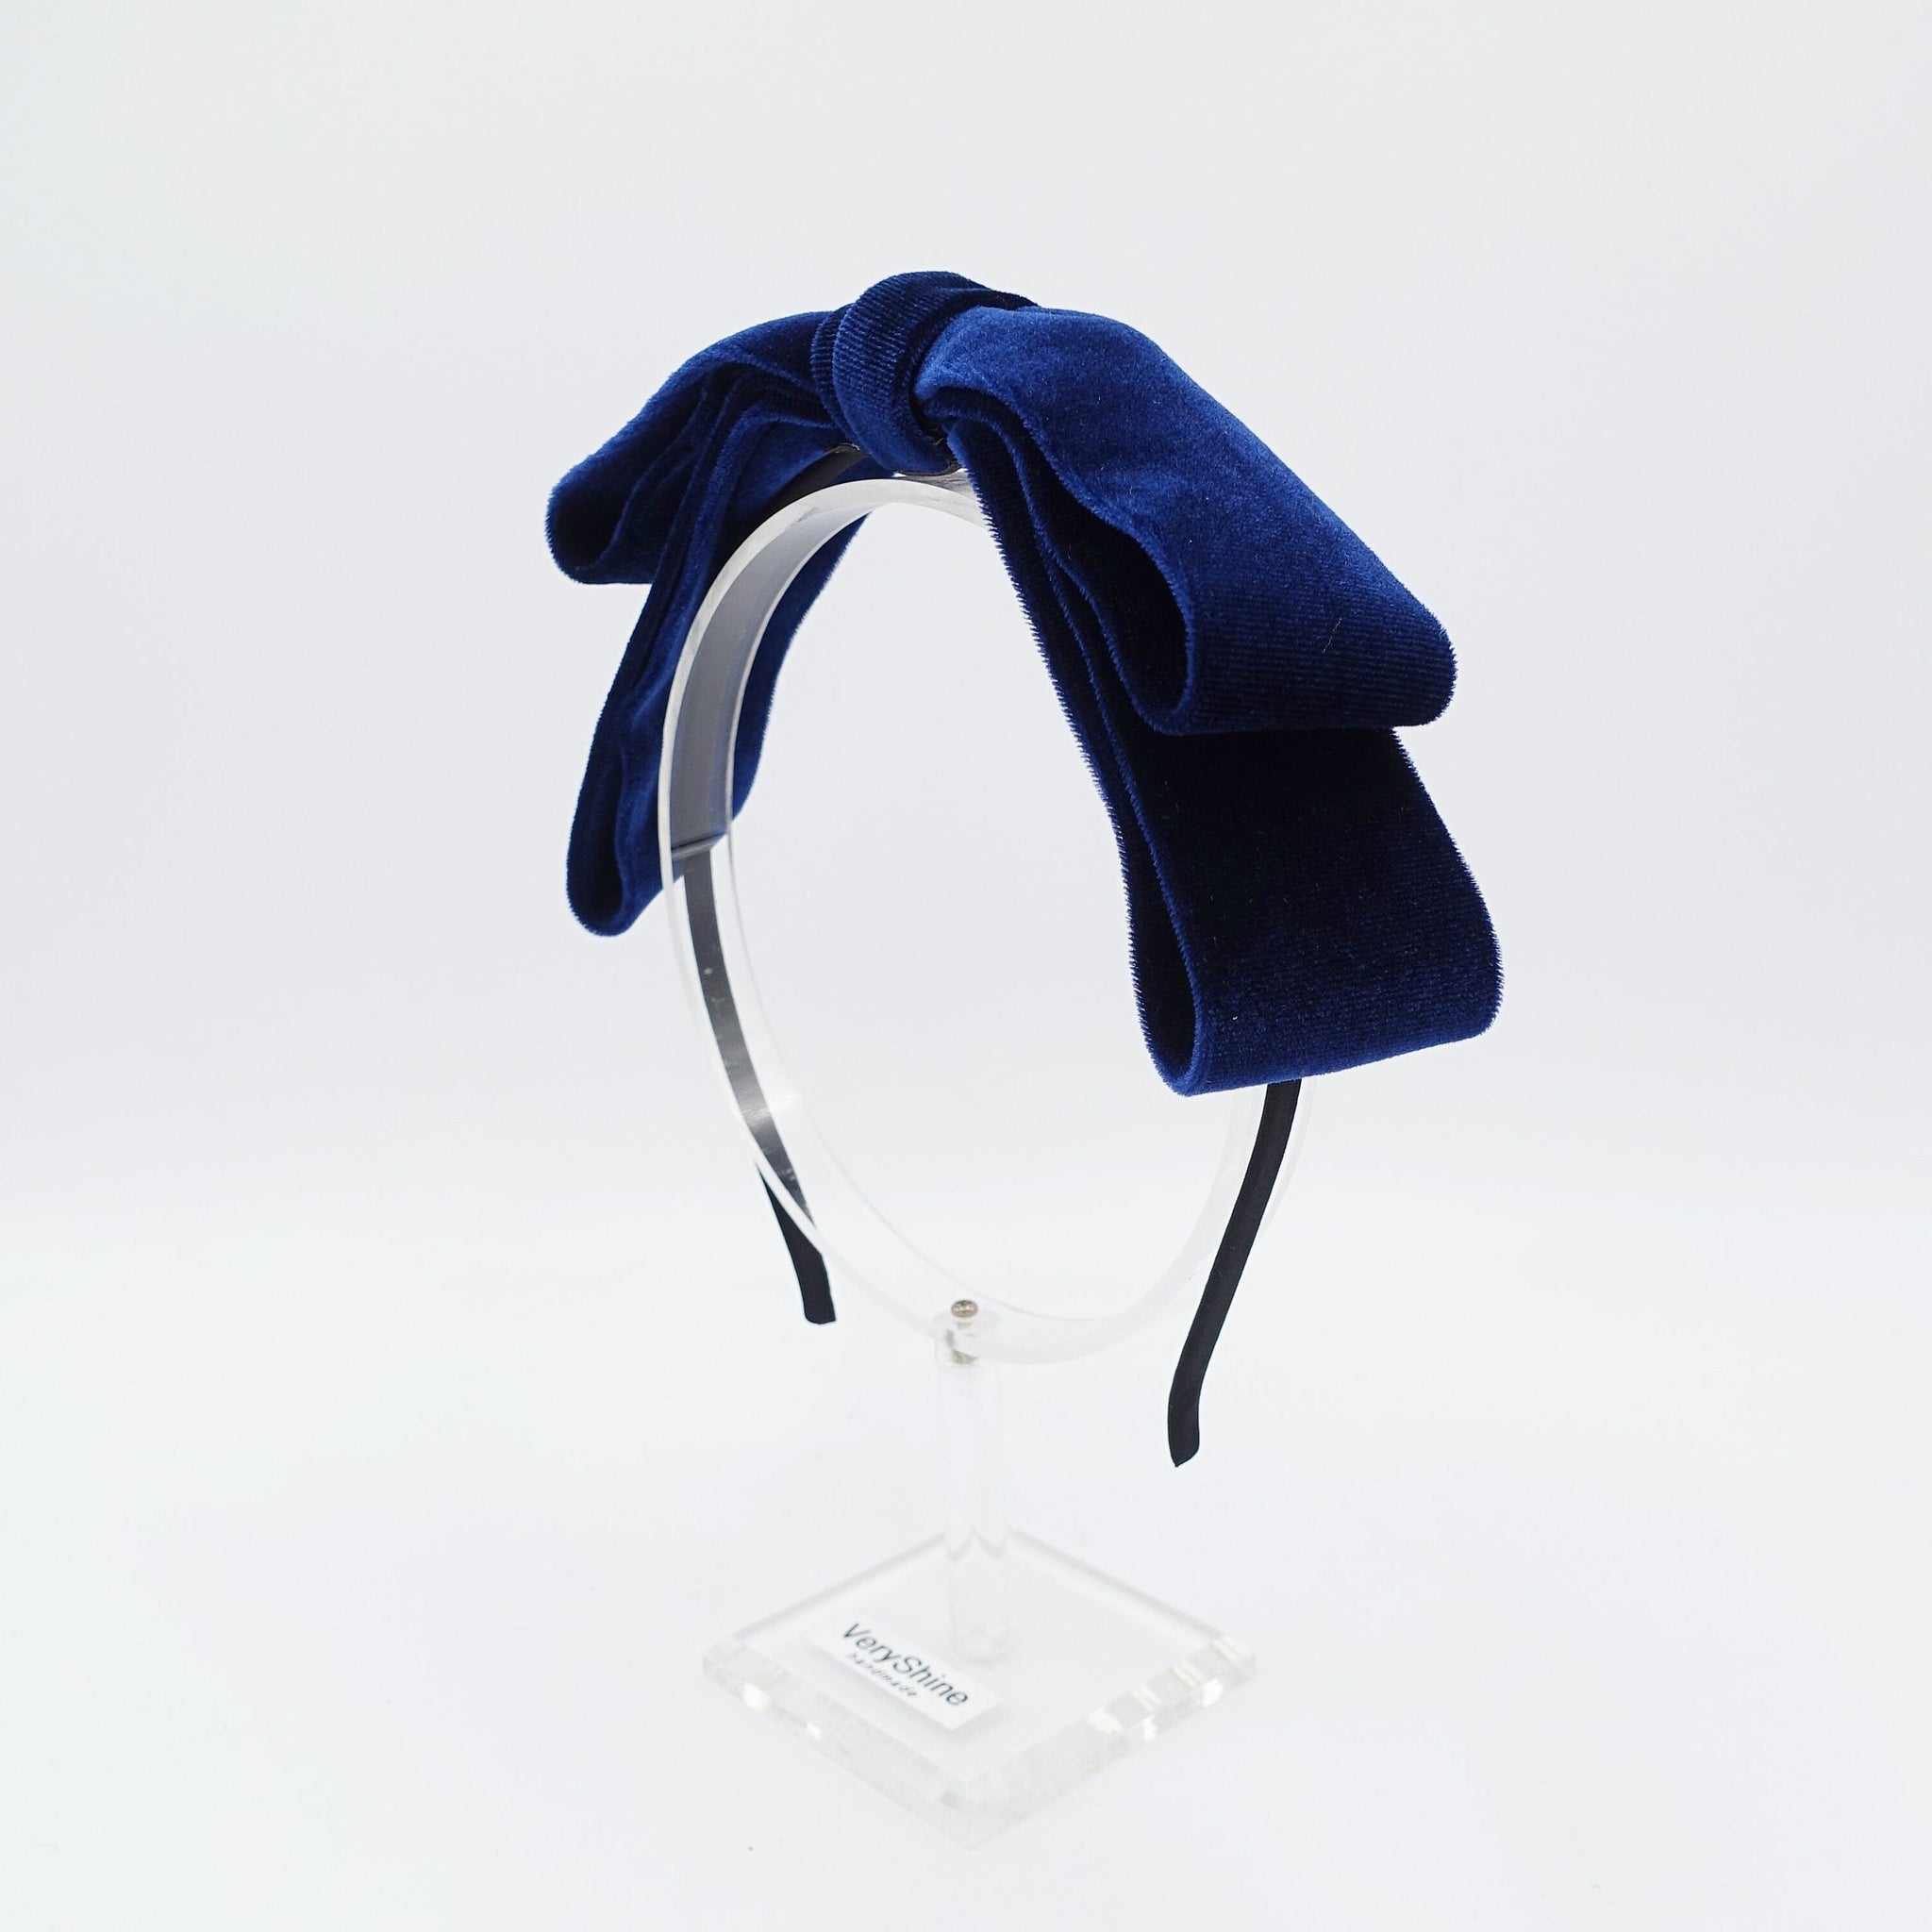 veryshine.com Headband Double navy velvet loop bow headband thin hairband women hair accessory